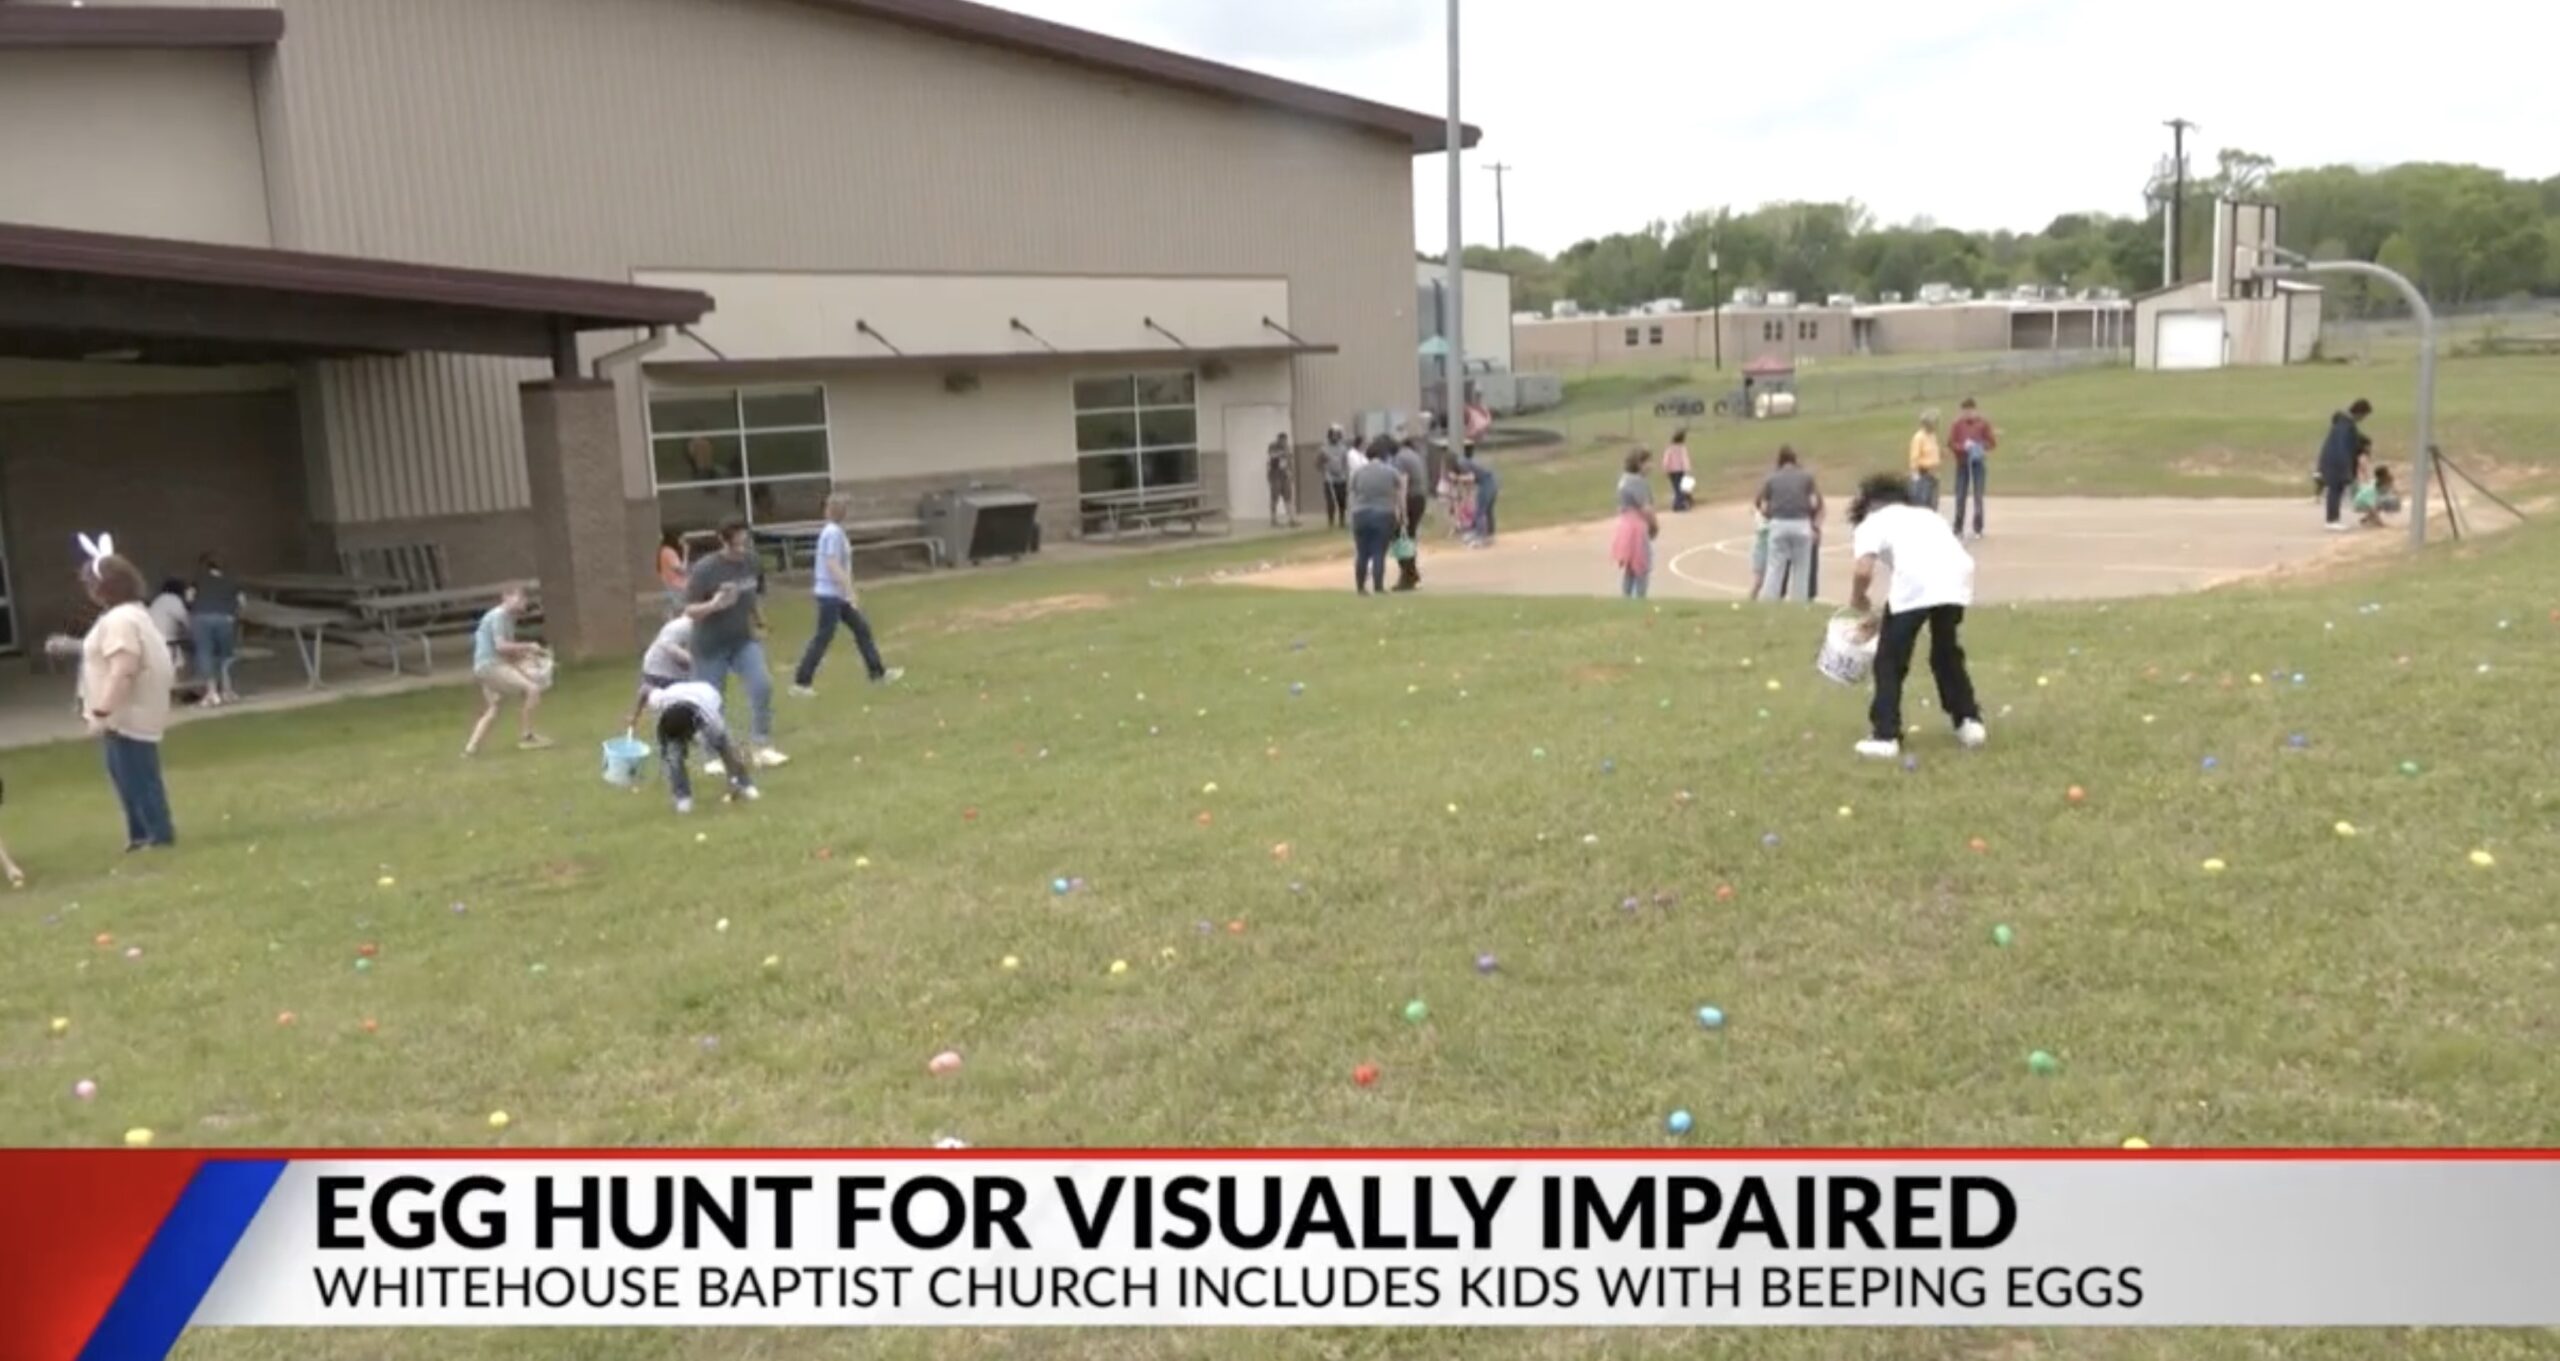 Whitehouse Baptist Church Hosts Easter Egg Hunt for Visually Impaired Kids